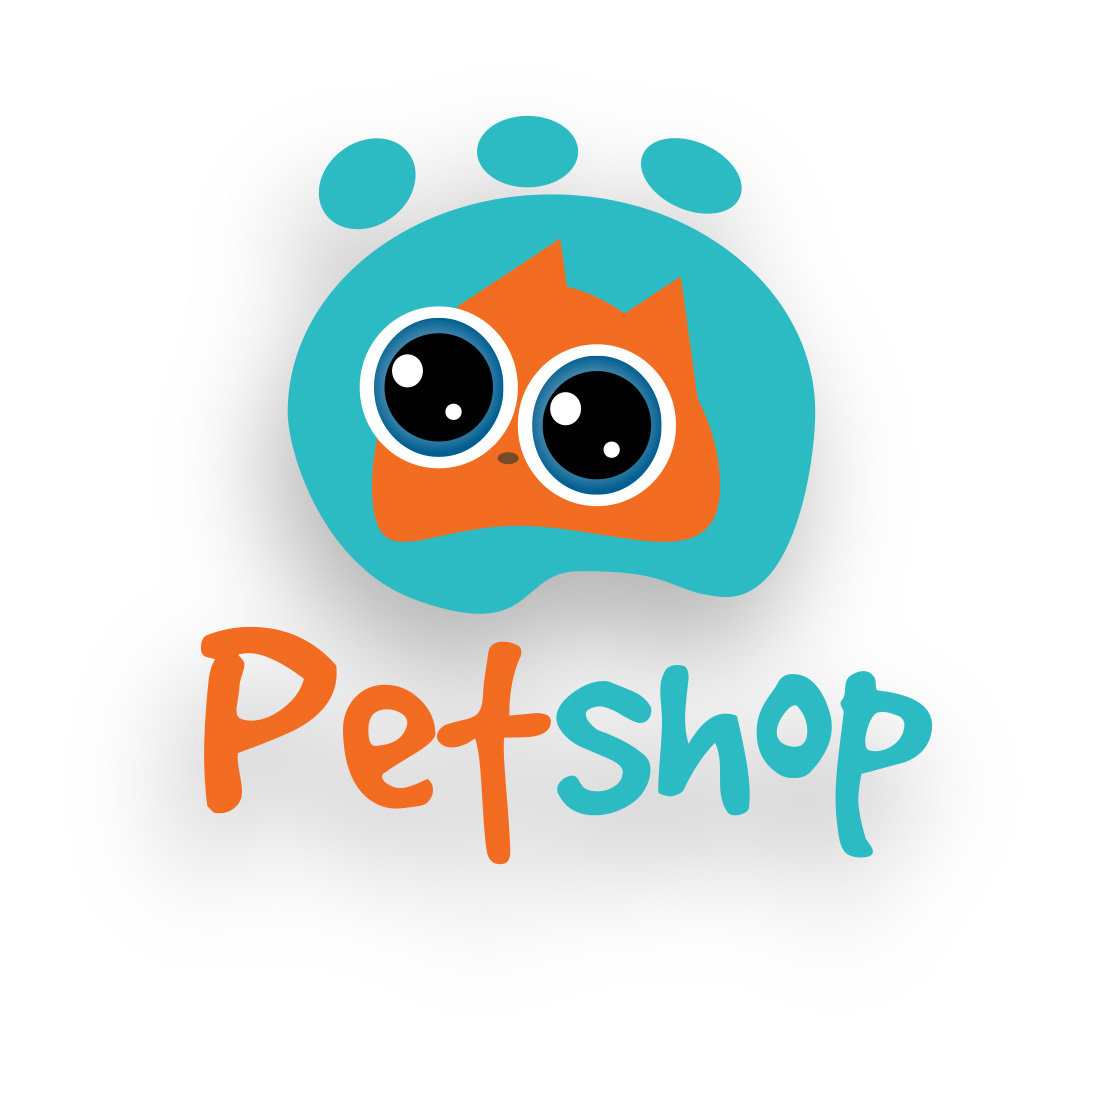 Petshop logo design preview image.